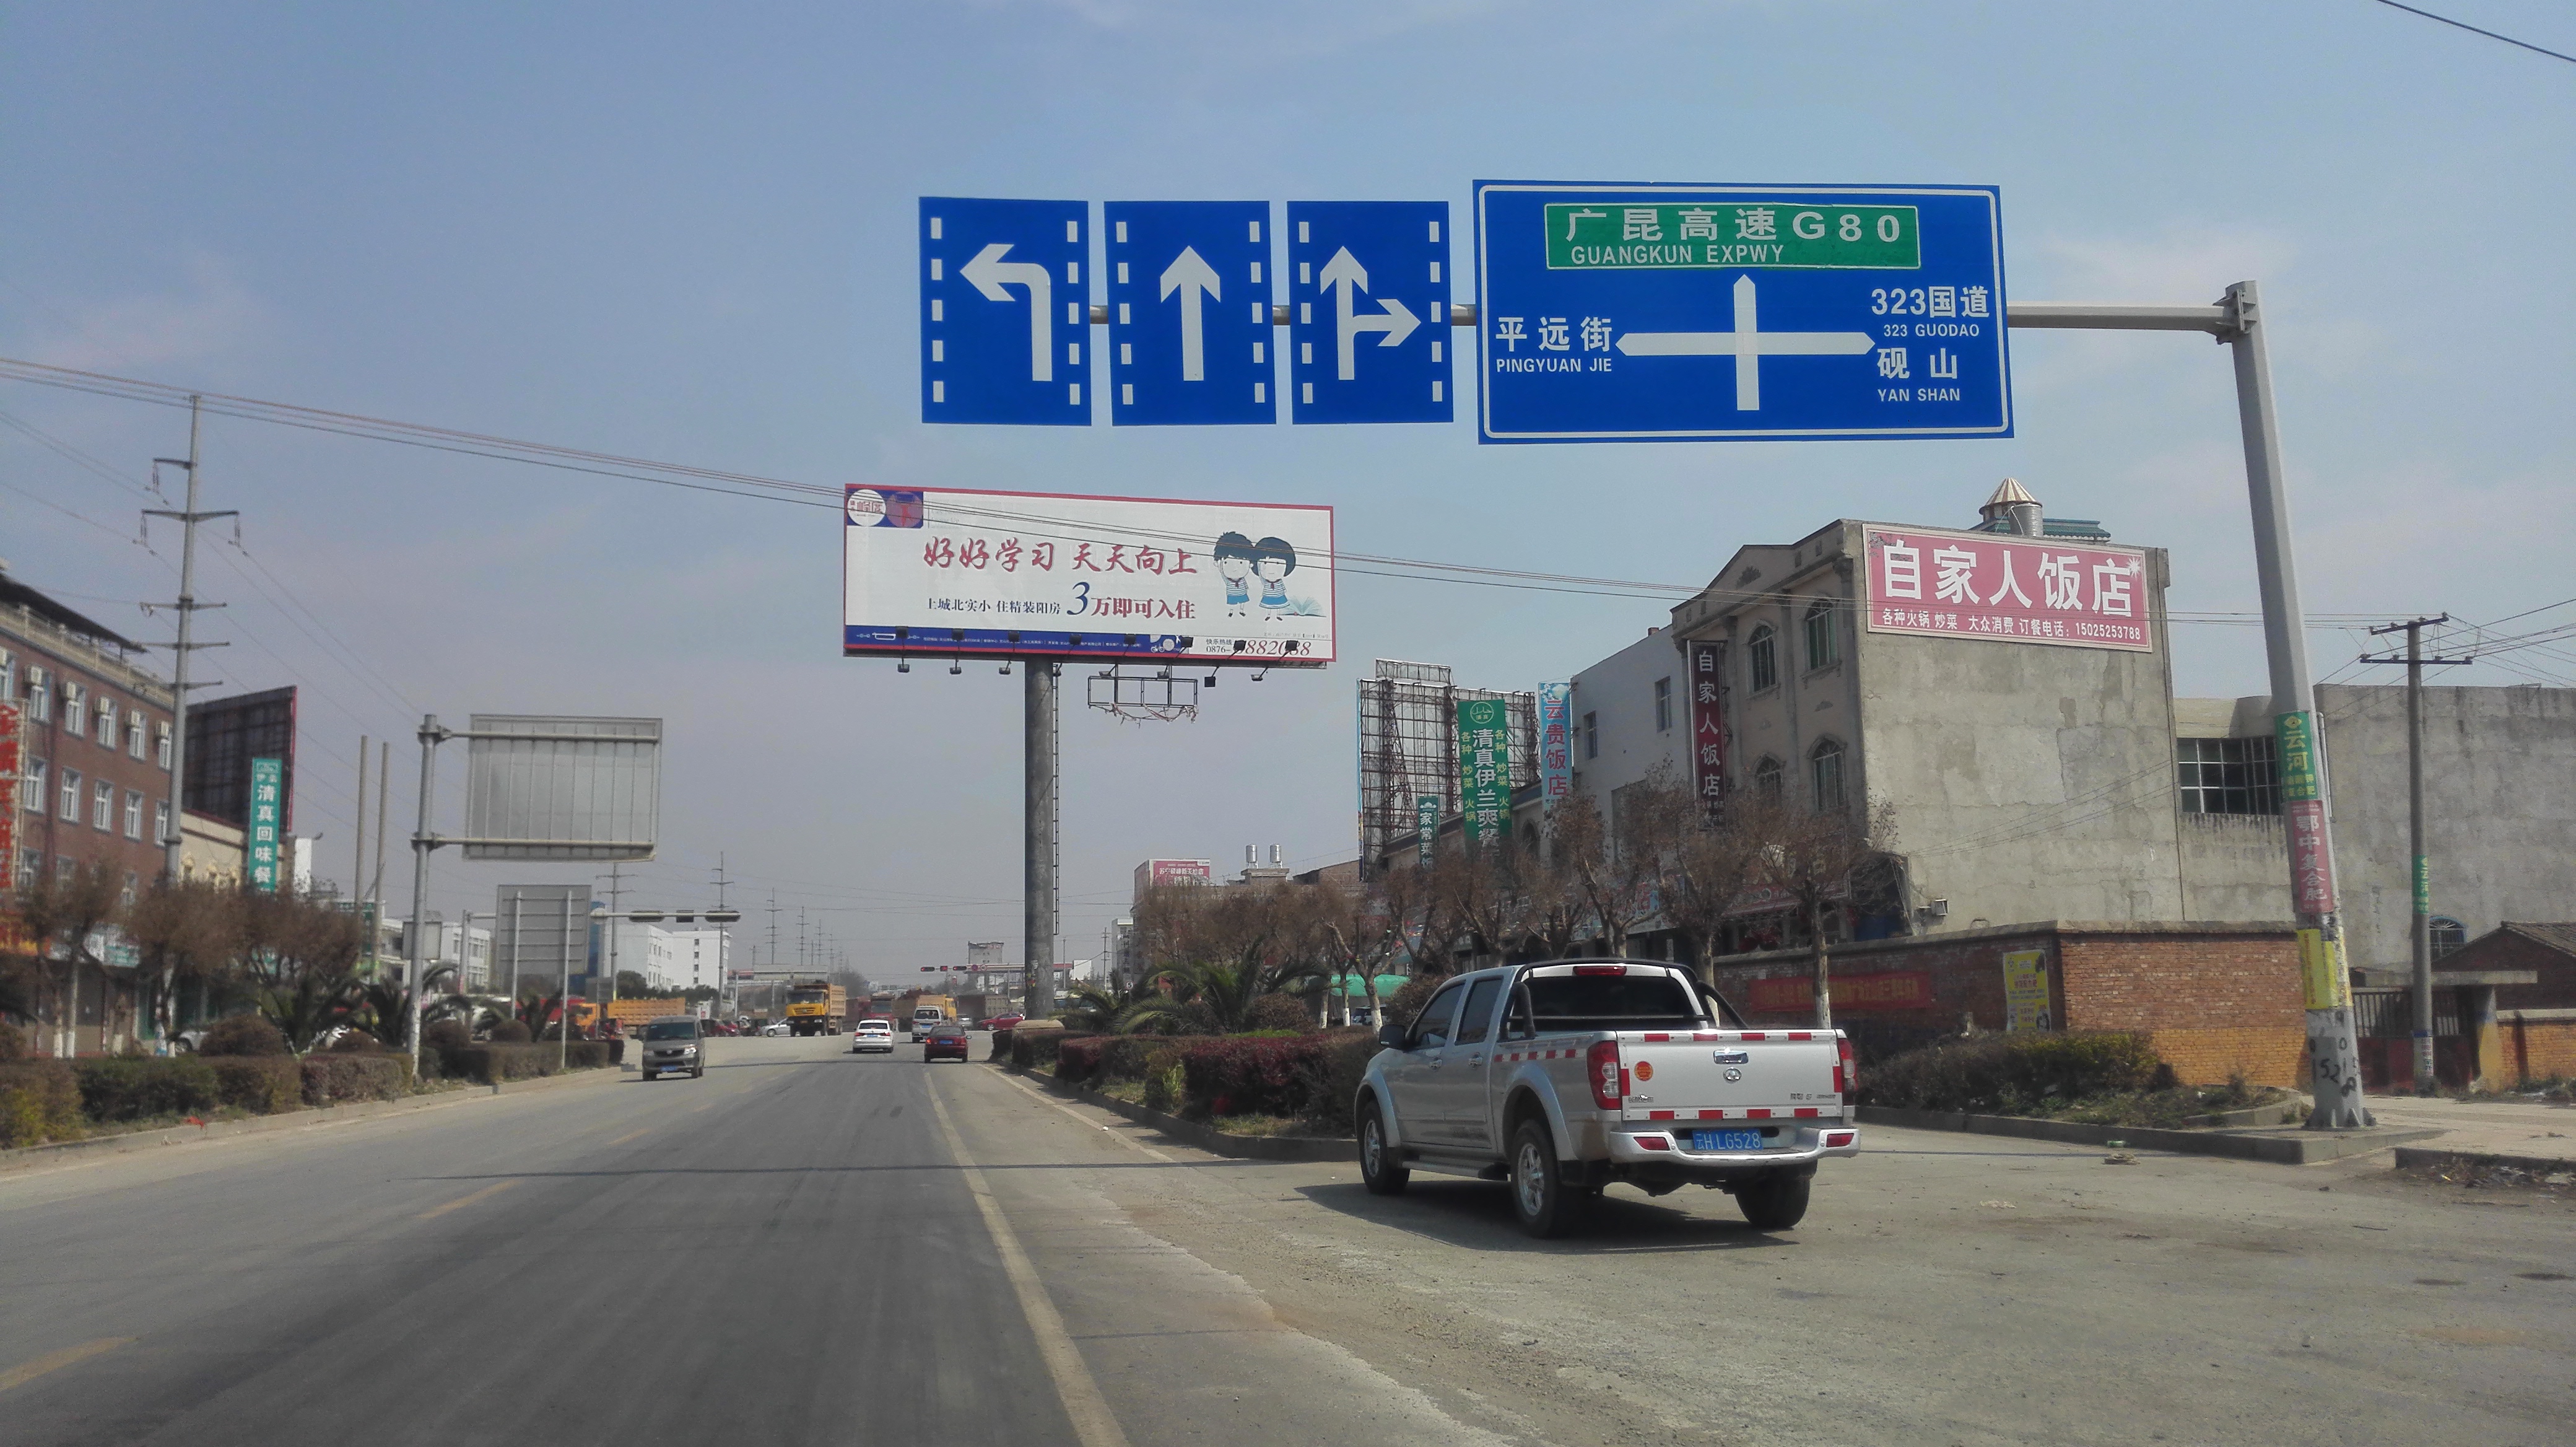 没什么特色了,就是一个普通的镇子;平远街位于文山州砚山县西部,位于图片